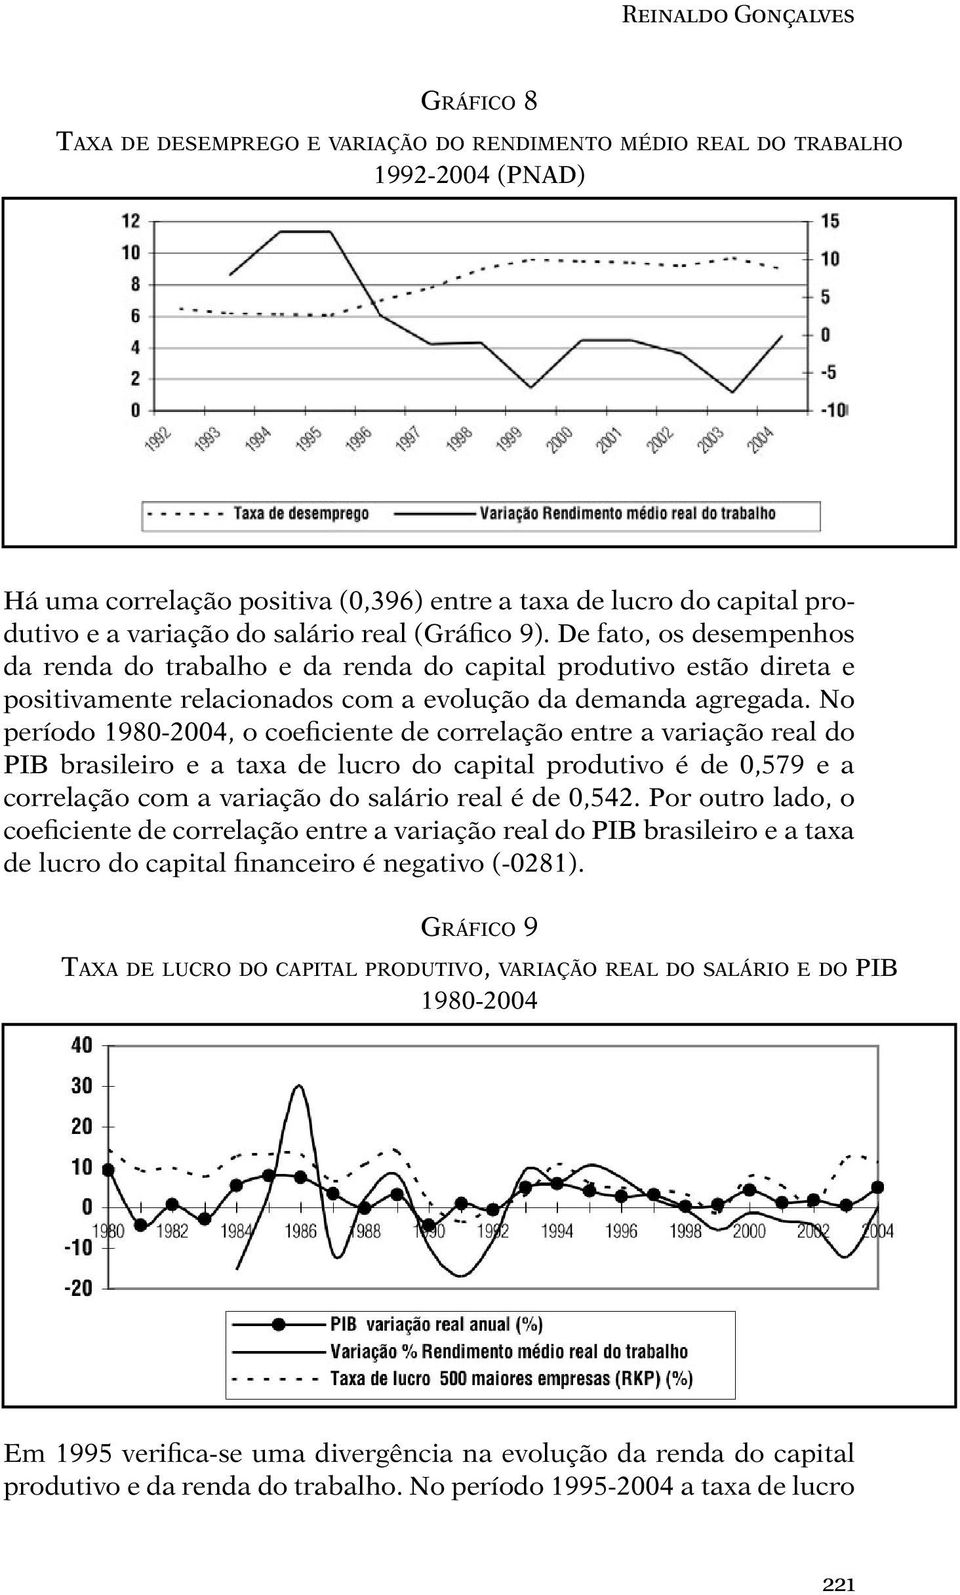 No período 1980-2004, o coeficiente de correlação entre a variação real do PIB brasileiro e a taxa de lucro do capital produtivo é de 0,579 e a correlação com a variação do salário real é de 0,542.